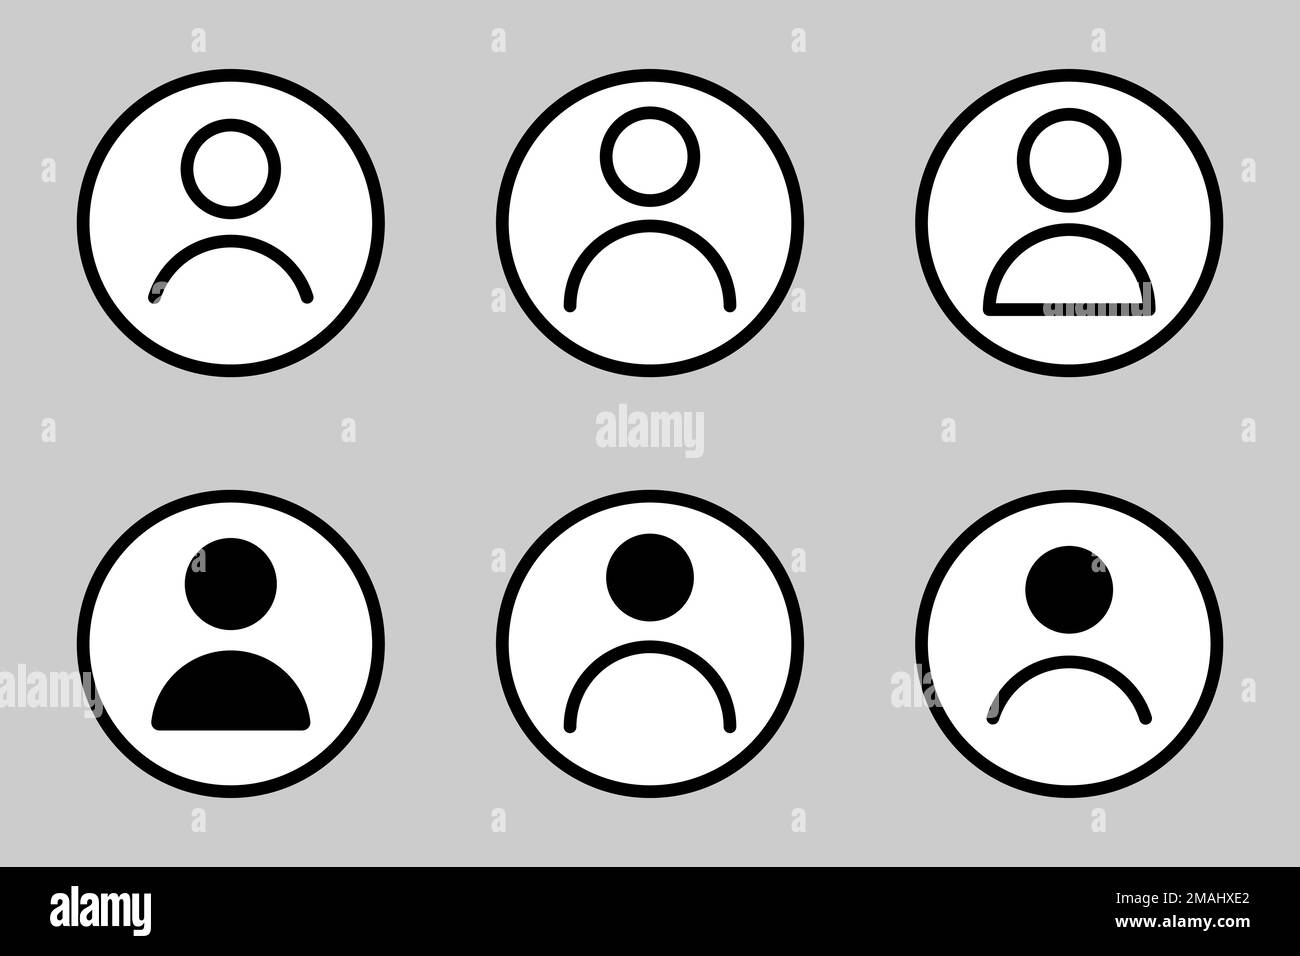 Benutzersymbolgruppe. Avatar-Profil, Social Media User Circle, isoliert auf weißem Hintergrund. Vektordarstellung Stock Vektor